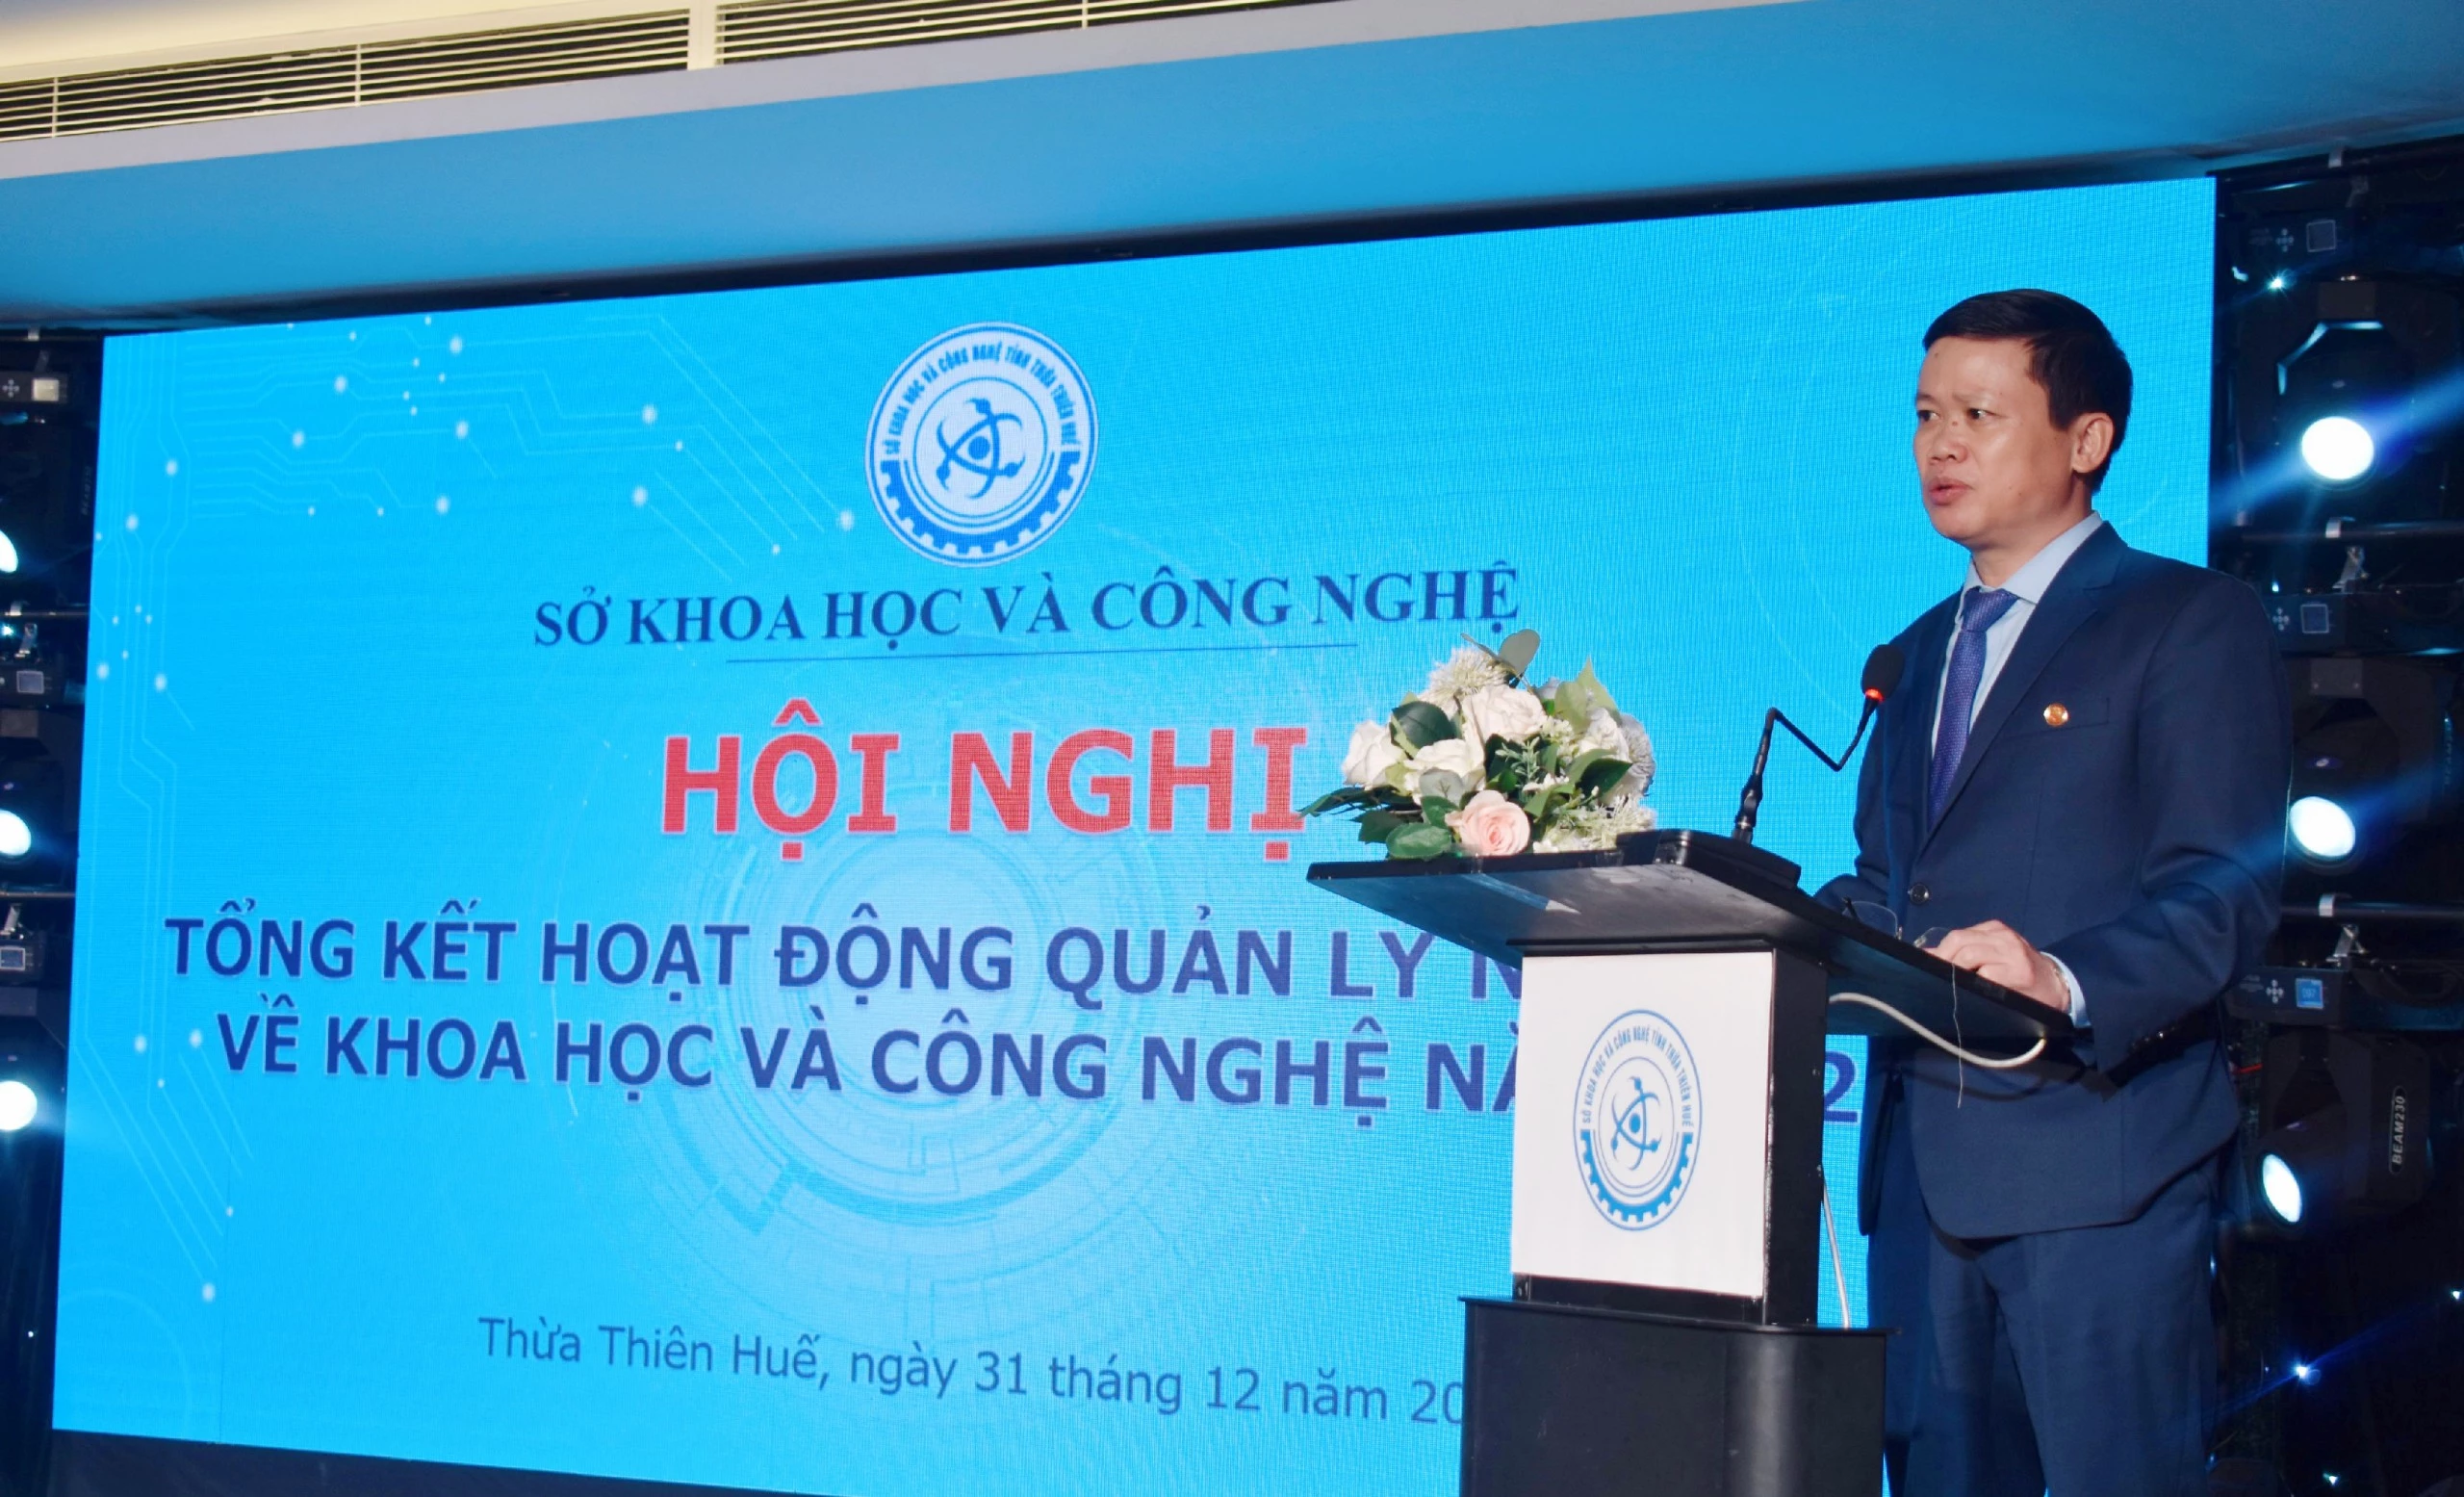  Giám đốc Sở KH&CN Hồ Thắng đã biểu dương thành tựu đạt được của tập thể Sở KH&CN trong thời gian qua